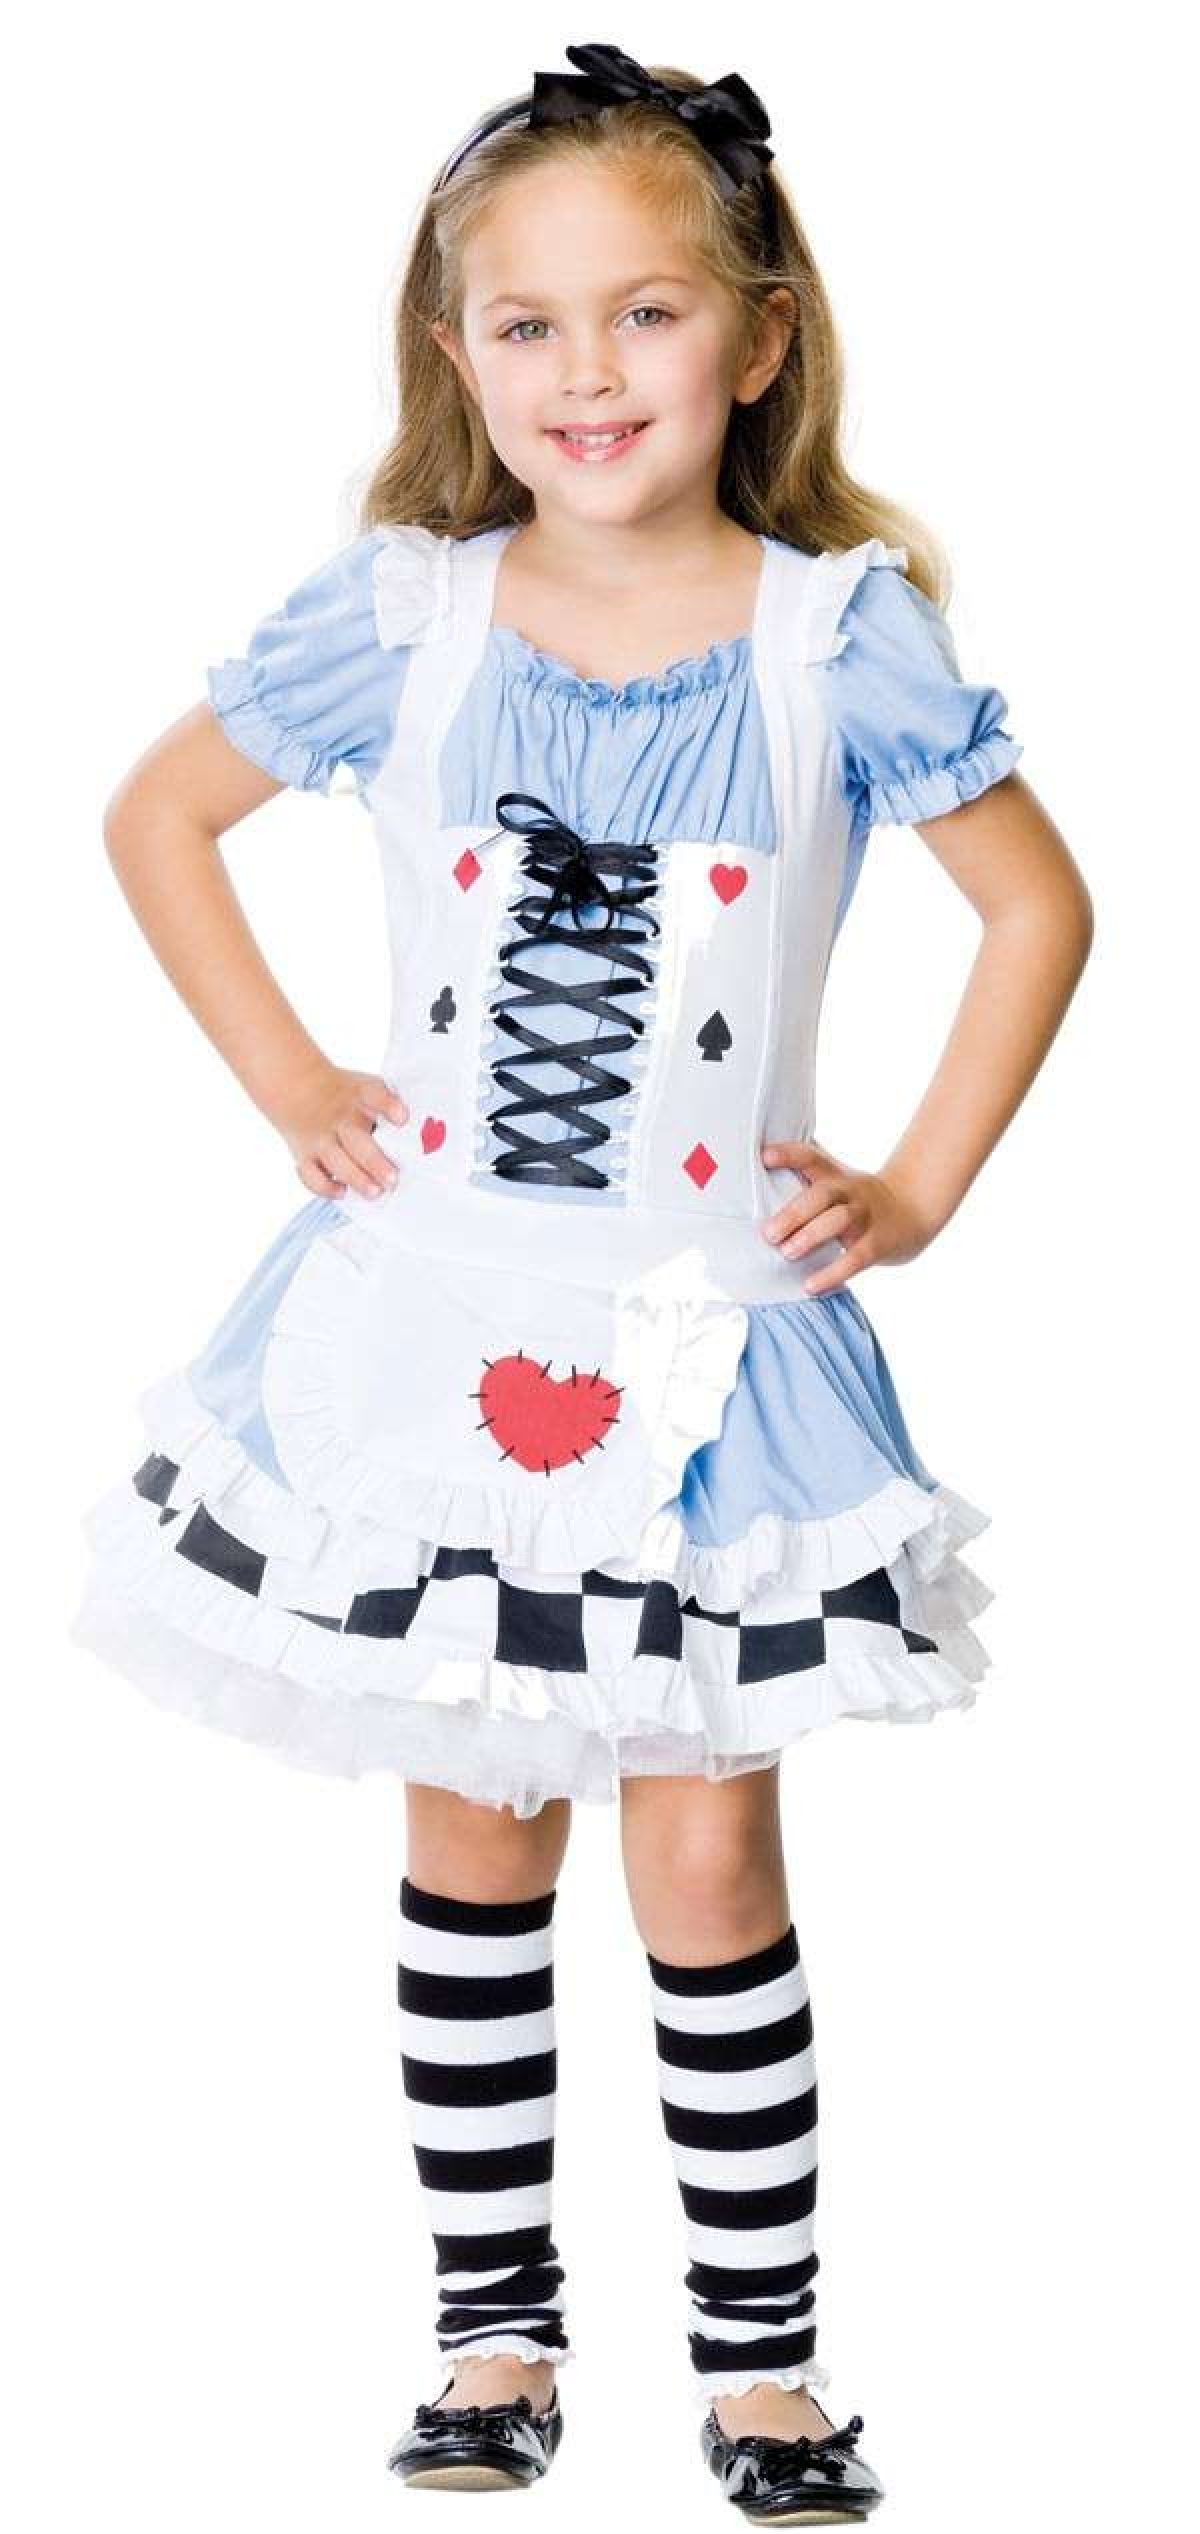 Алиса можно девочка. Девочка в костюме Алисы. Костюм Алисы в стране чудес. Костюм Алисы в стране чудес для девочки. Карнавальный костюм Алиса в стране чудес для девочки.